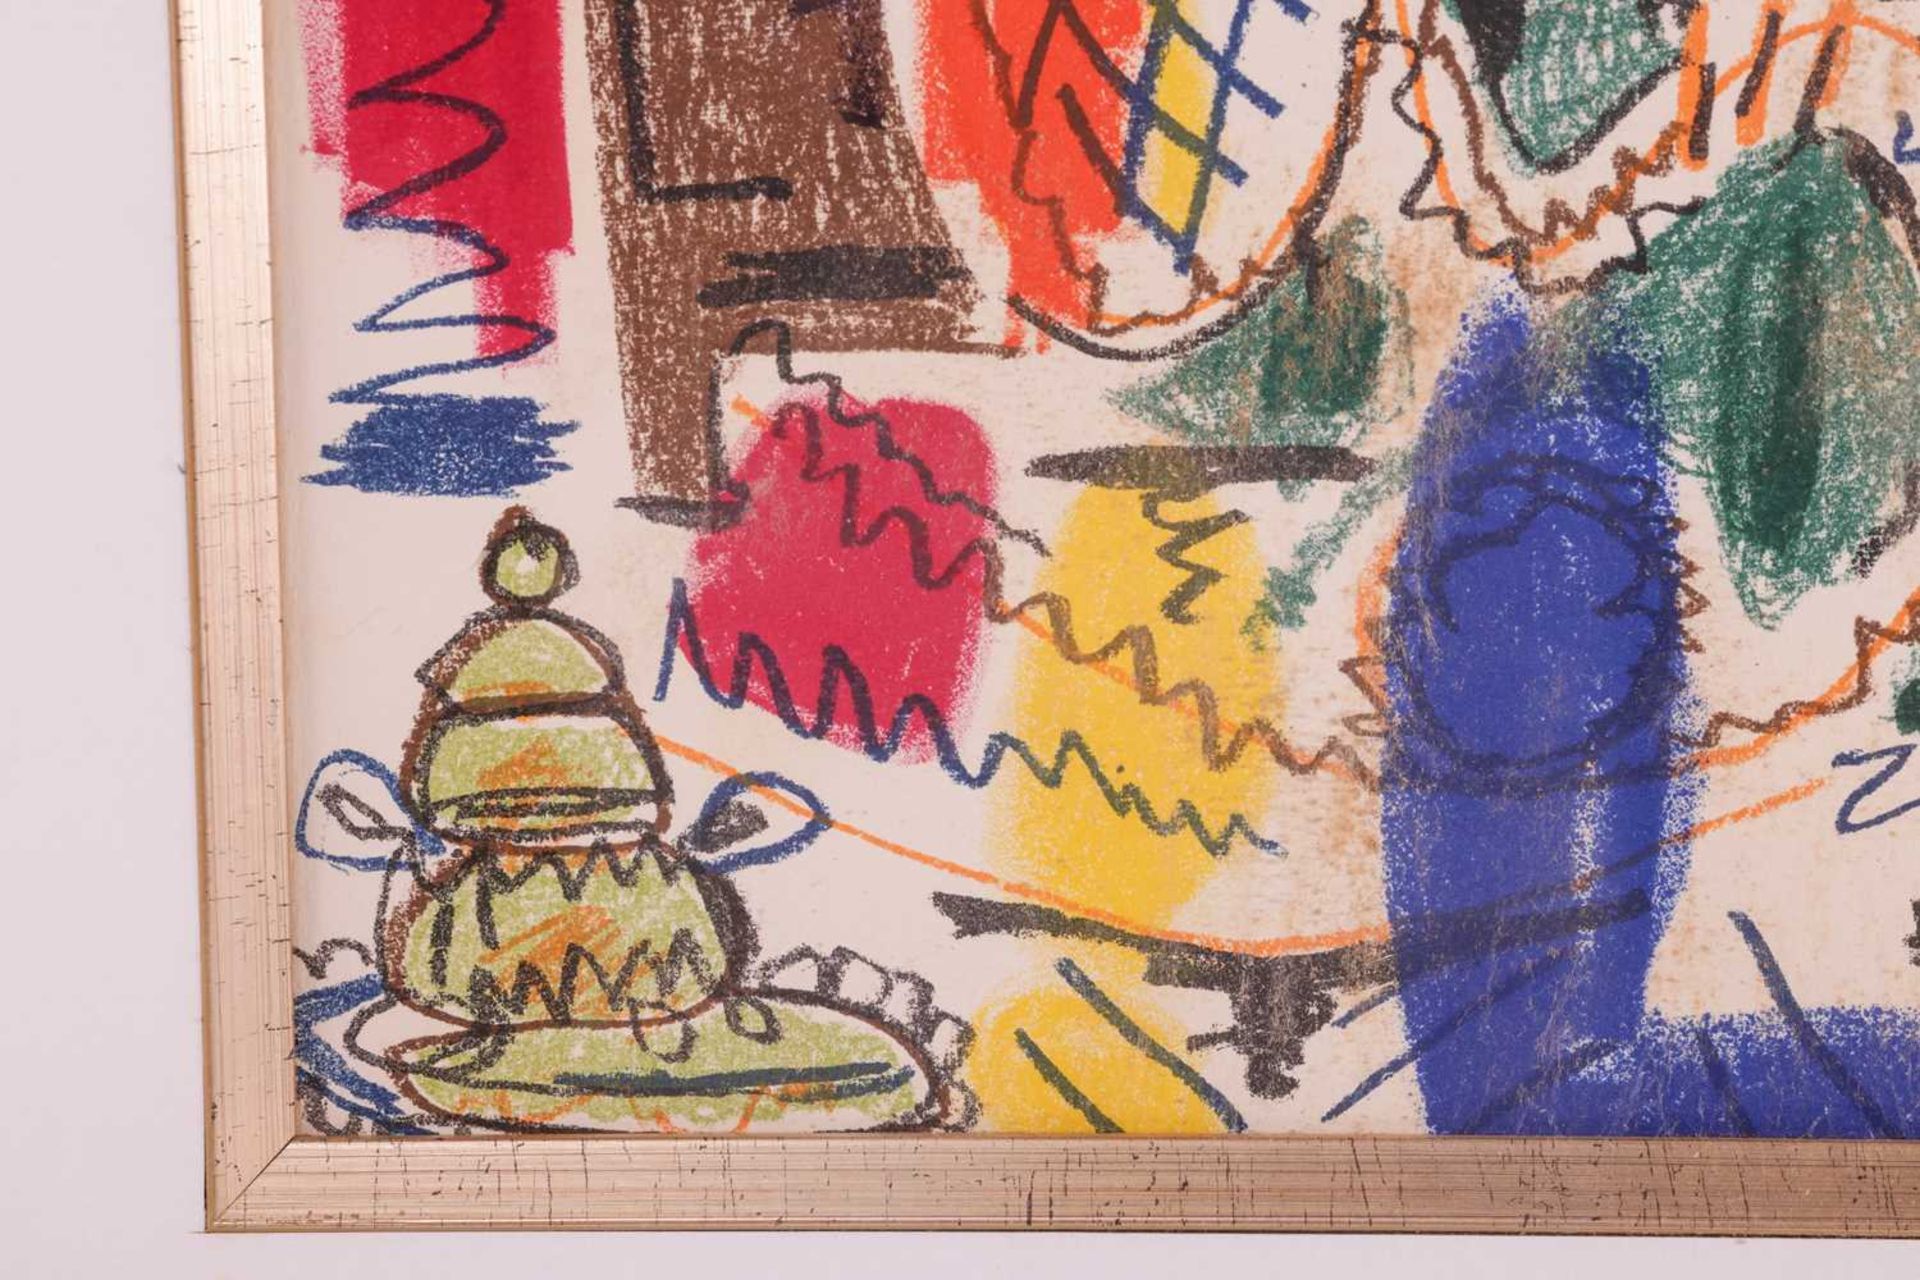 After Pablo Picasso (Spanish, 1881 - 1973), L'Atelier de Cannes (1958), colour lithograph, 43 x 30 c - Image 9 of 17